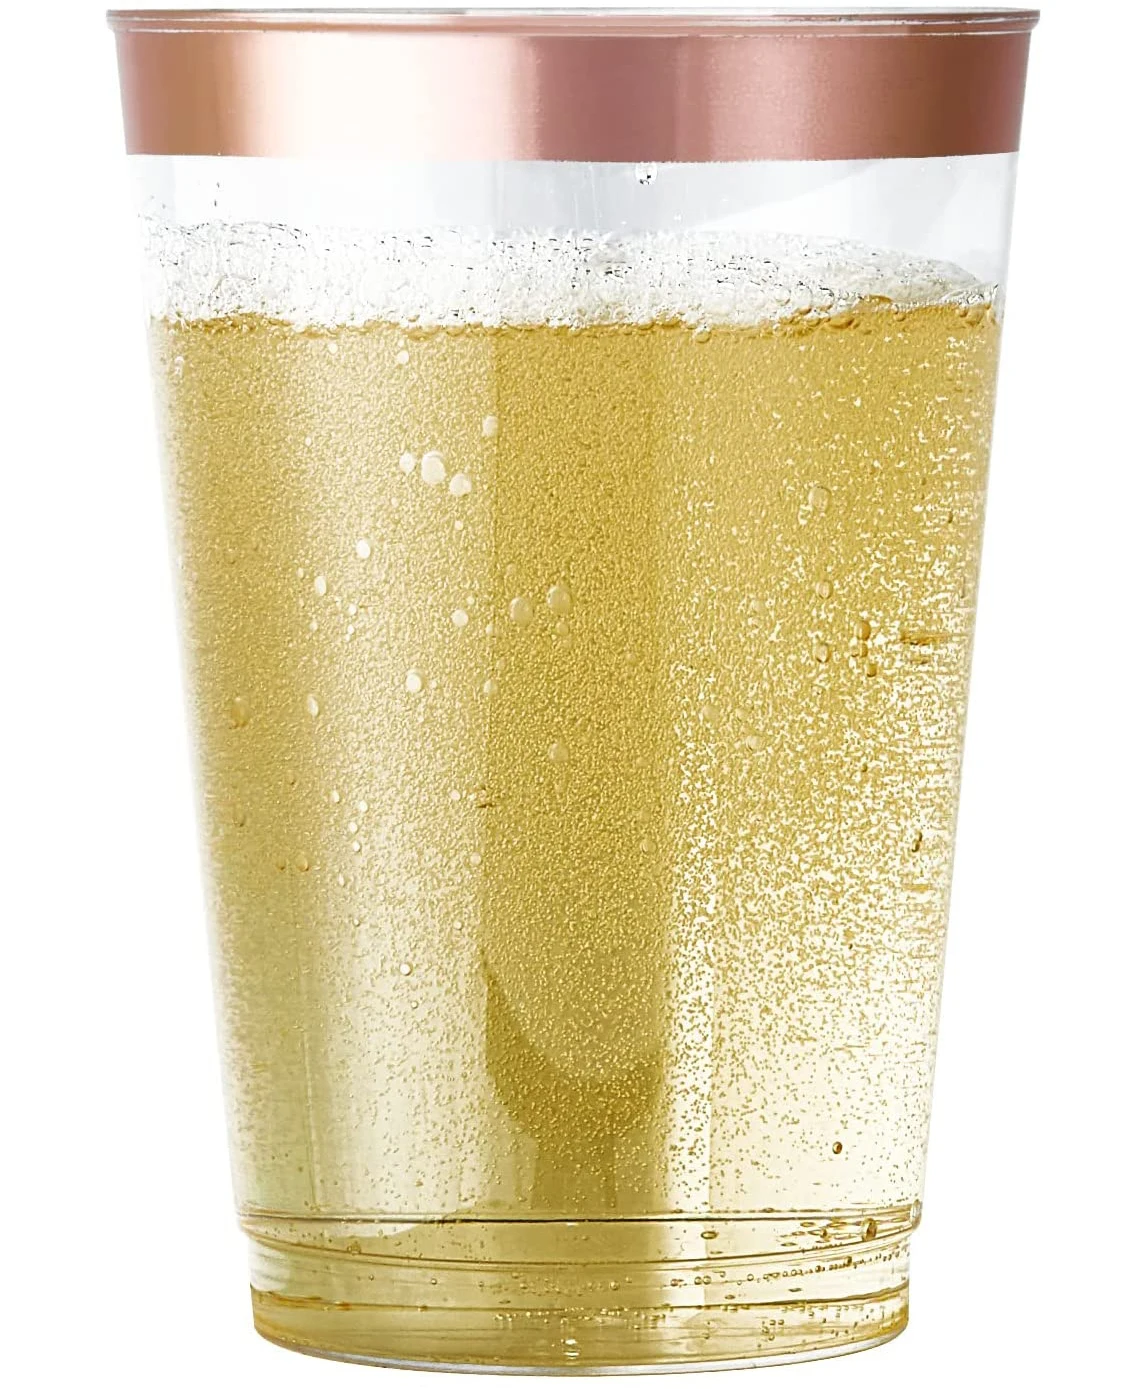 Getta con Bordo Dorato Funhoo 50 Pezzi Bicchieri in plastica Trasparente Dorata Eleganti Bicchieri alla Moda per Feste e Matrimoni 